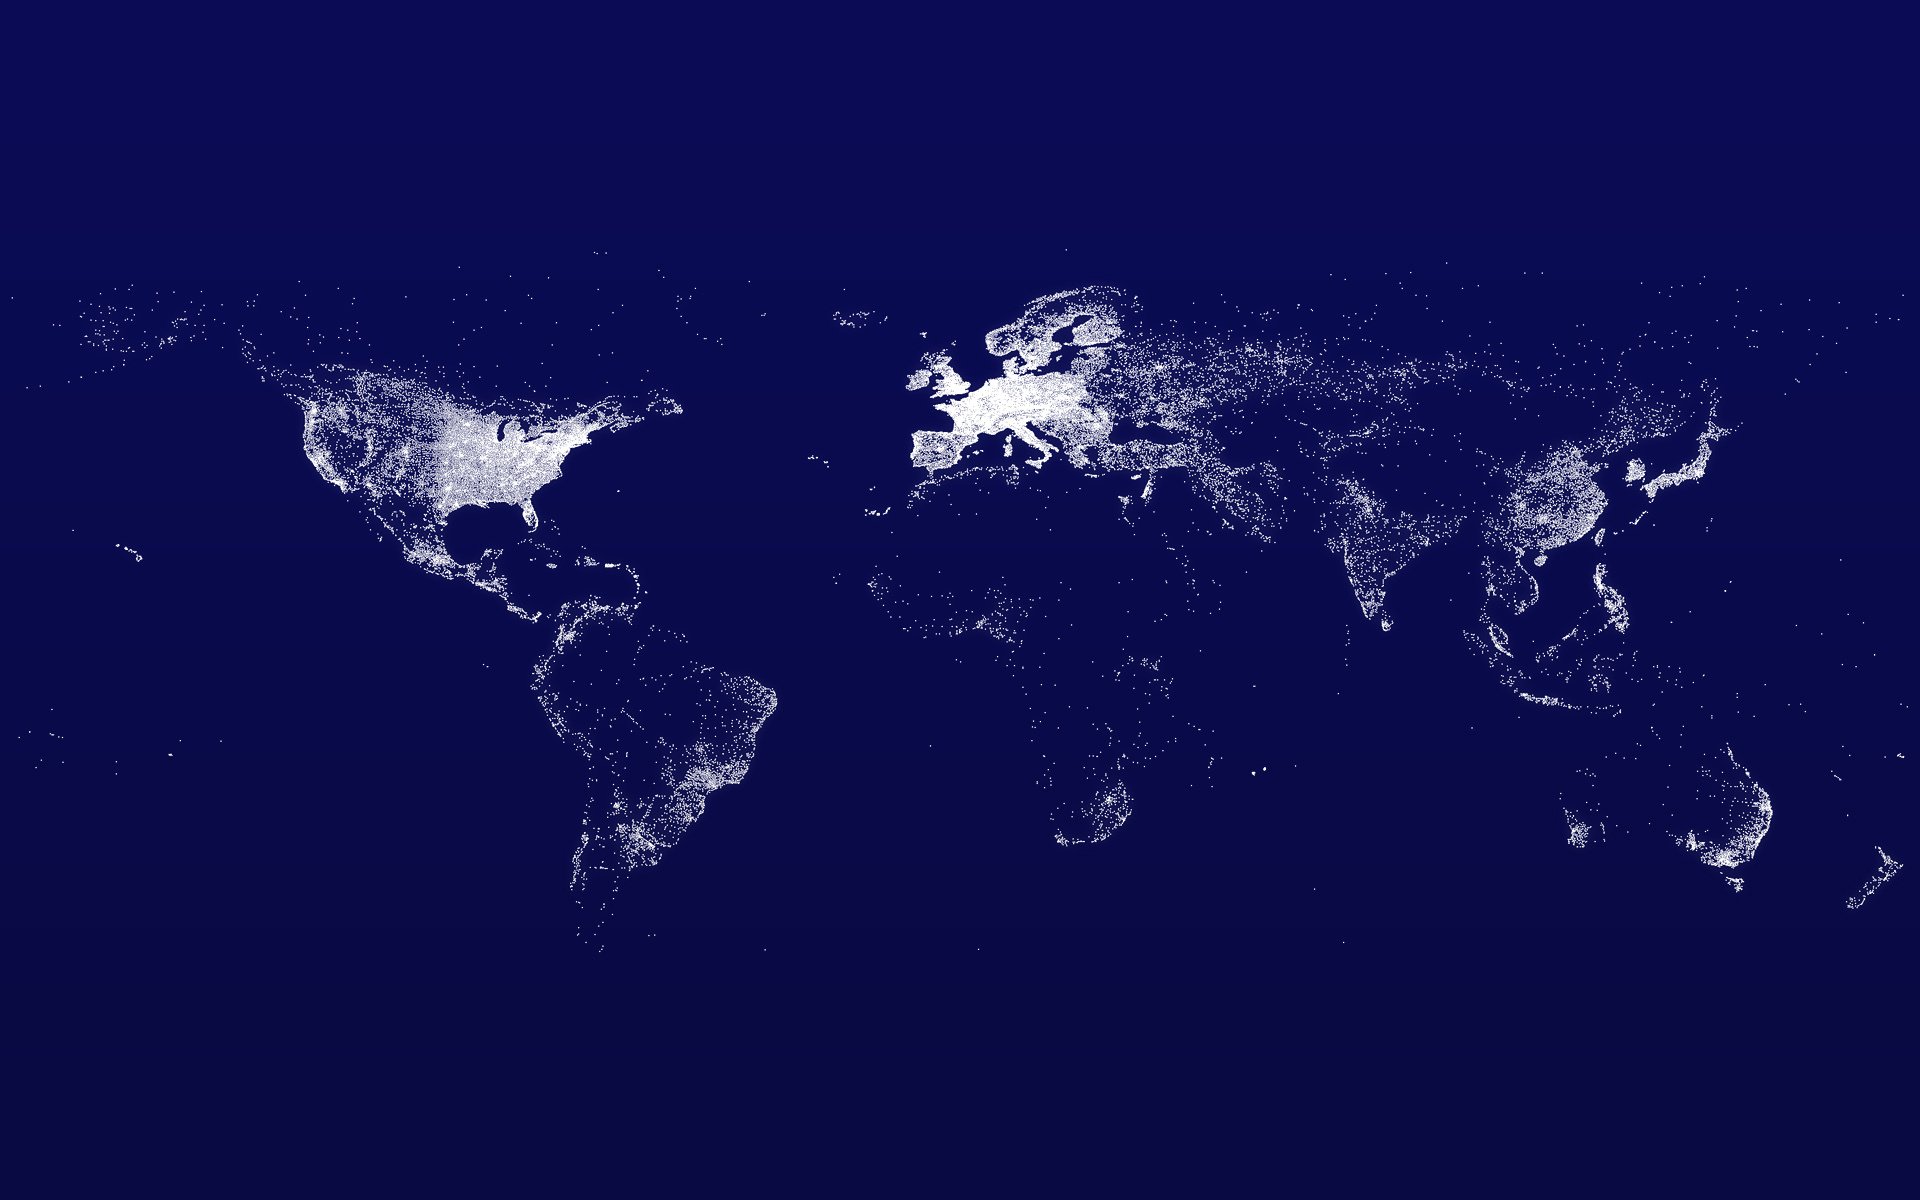 Карта мира снимок из космоса - обои на рабочий стол